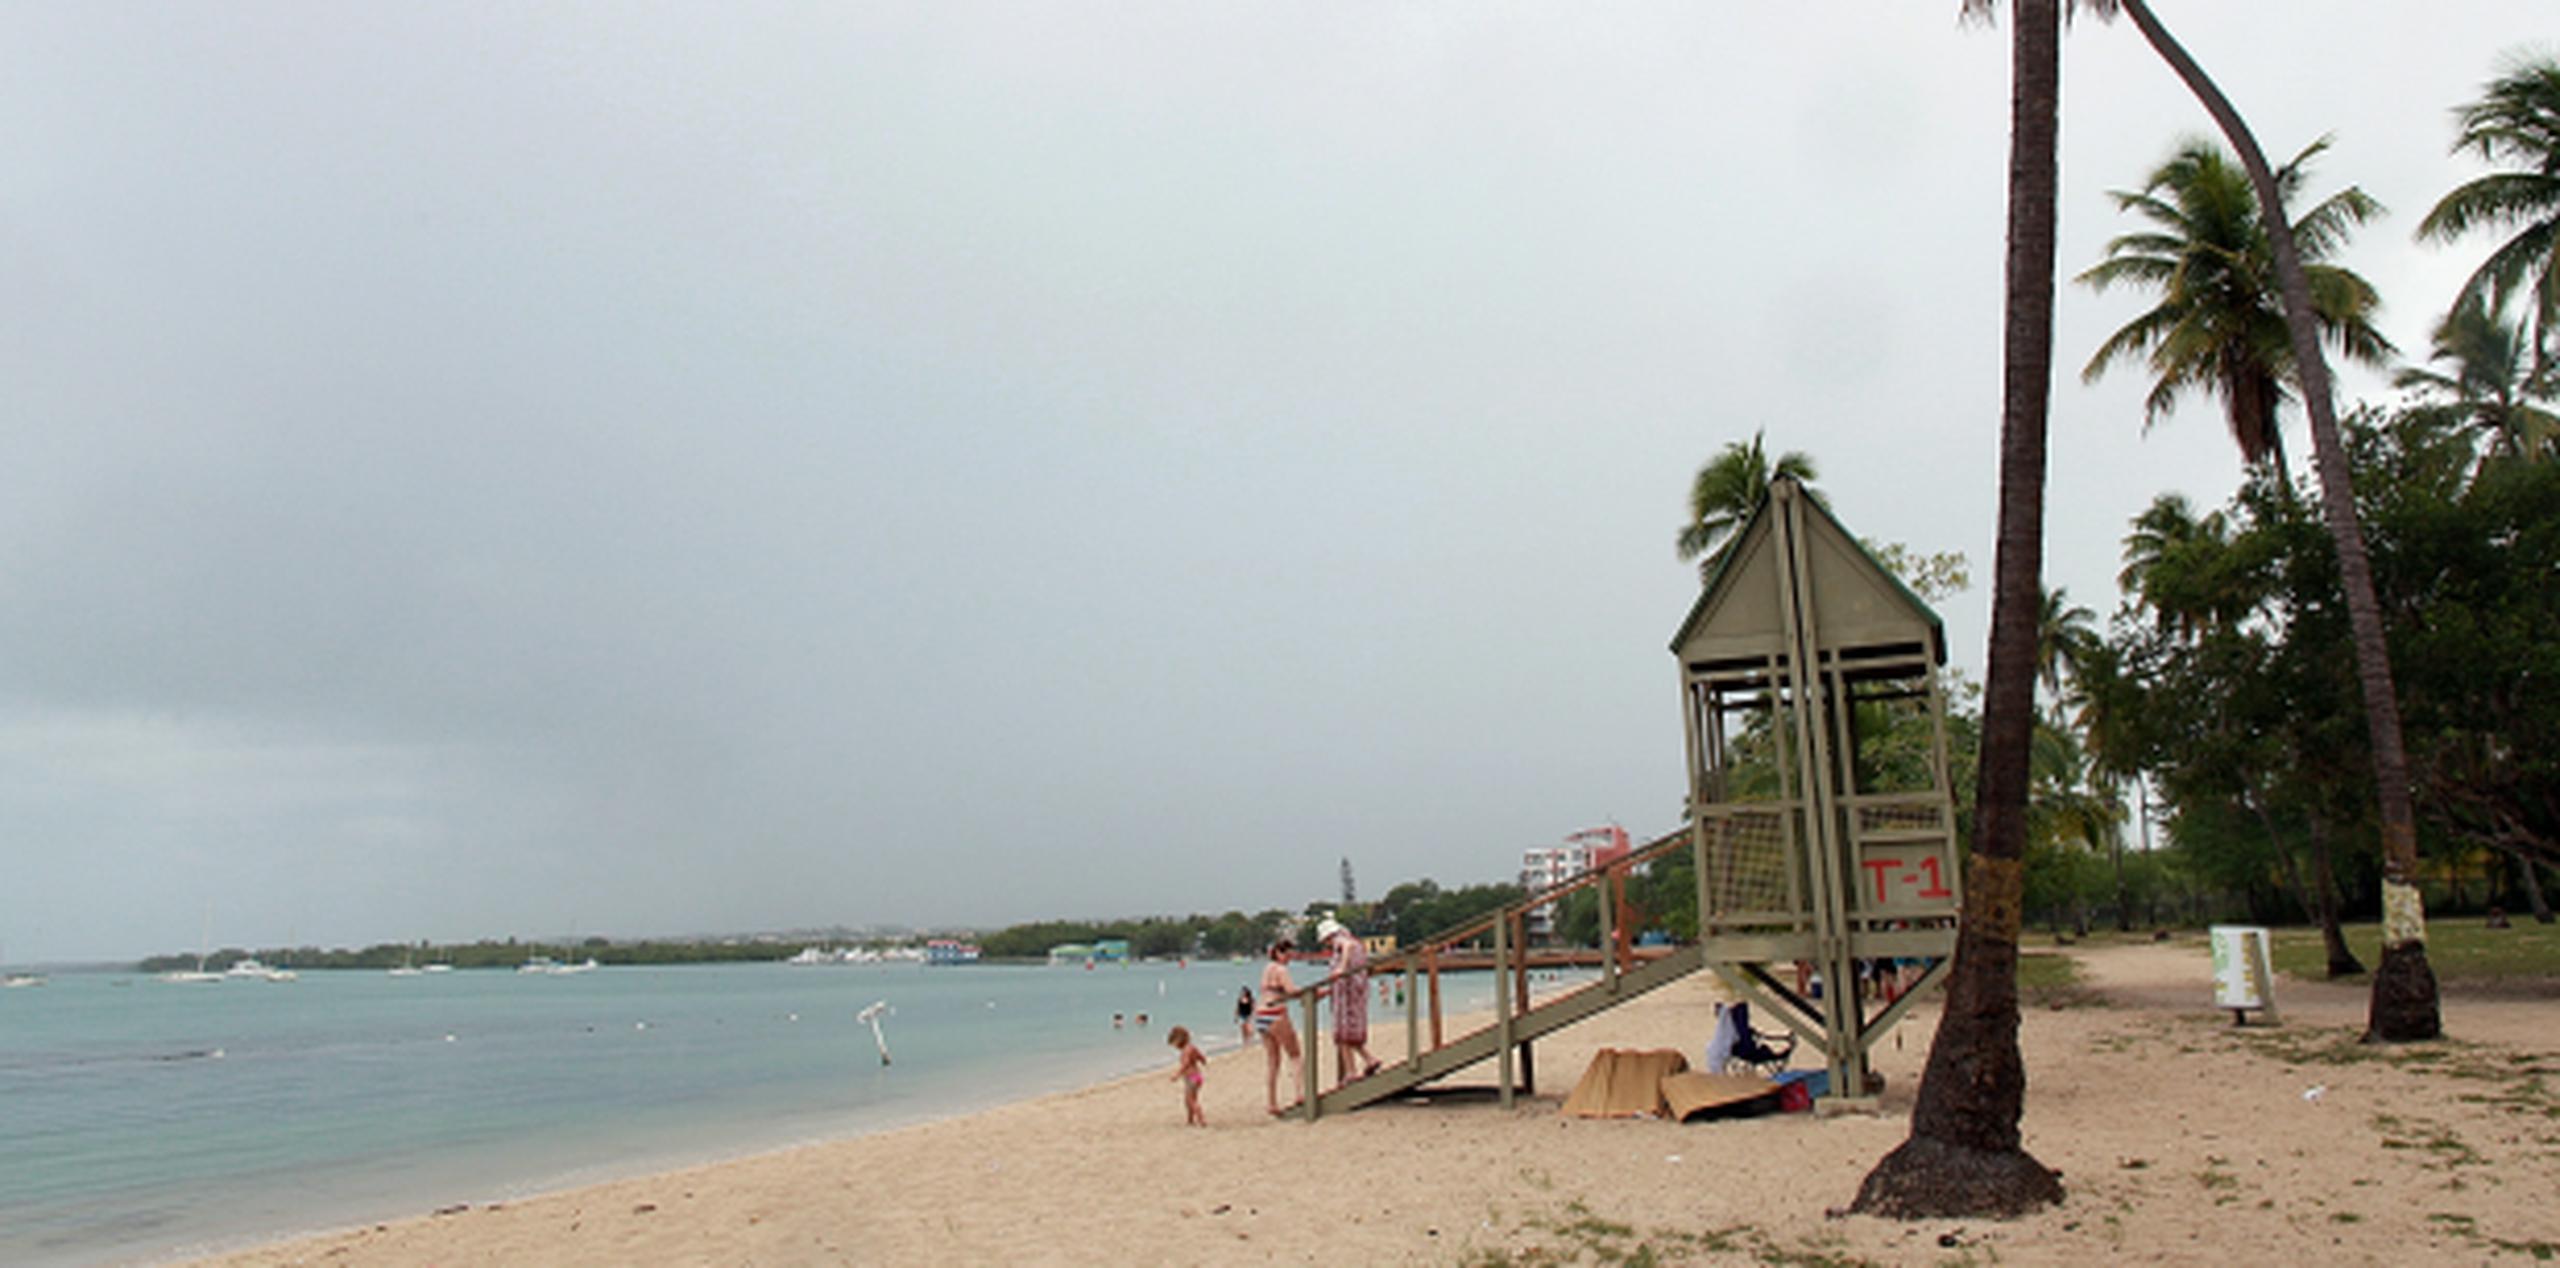 Si insiste en ir a la playa, sepa que los 11 balnearios de la CPN están aptos para bañistas, indicó Del Valle. (Archivo)